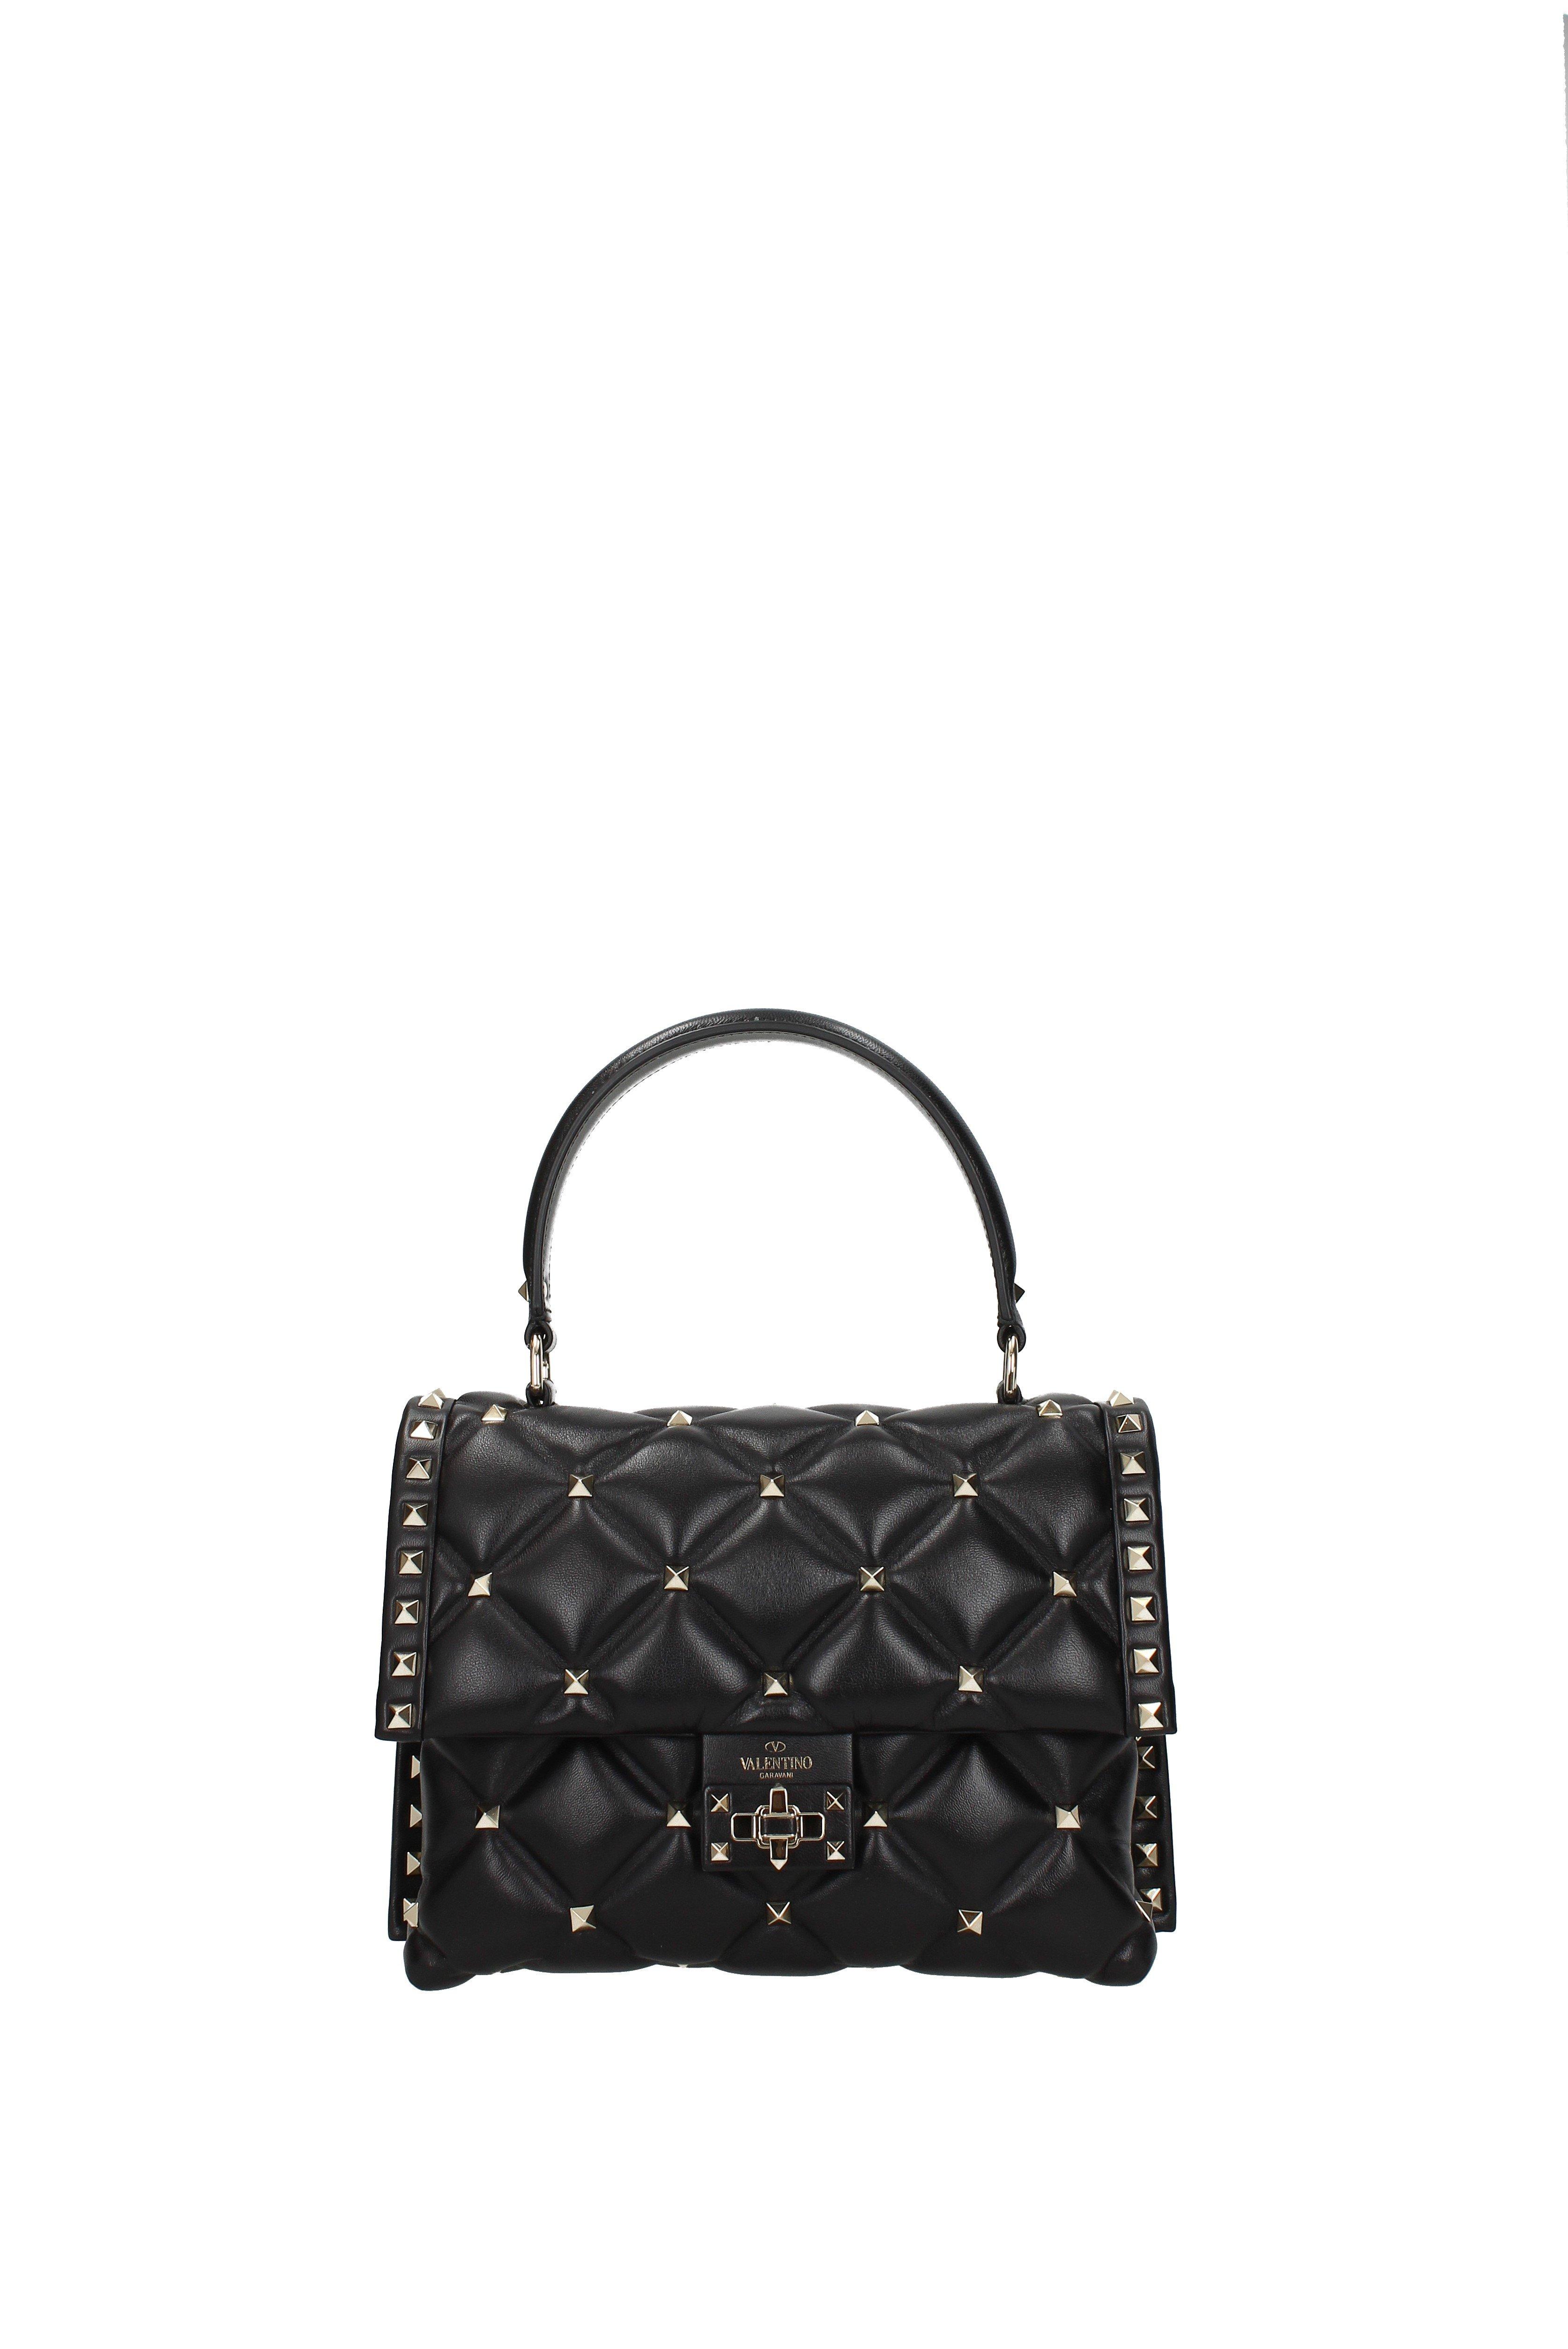 Valentino Handbags For Women | semashow.com